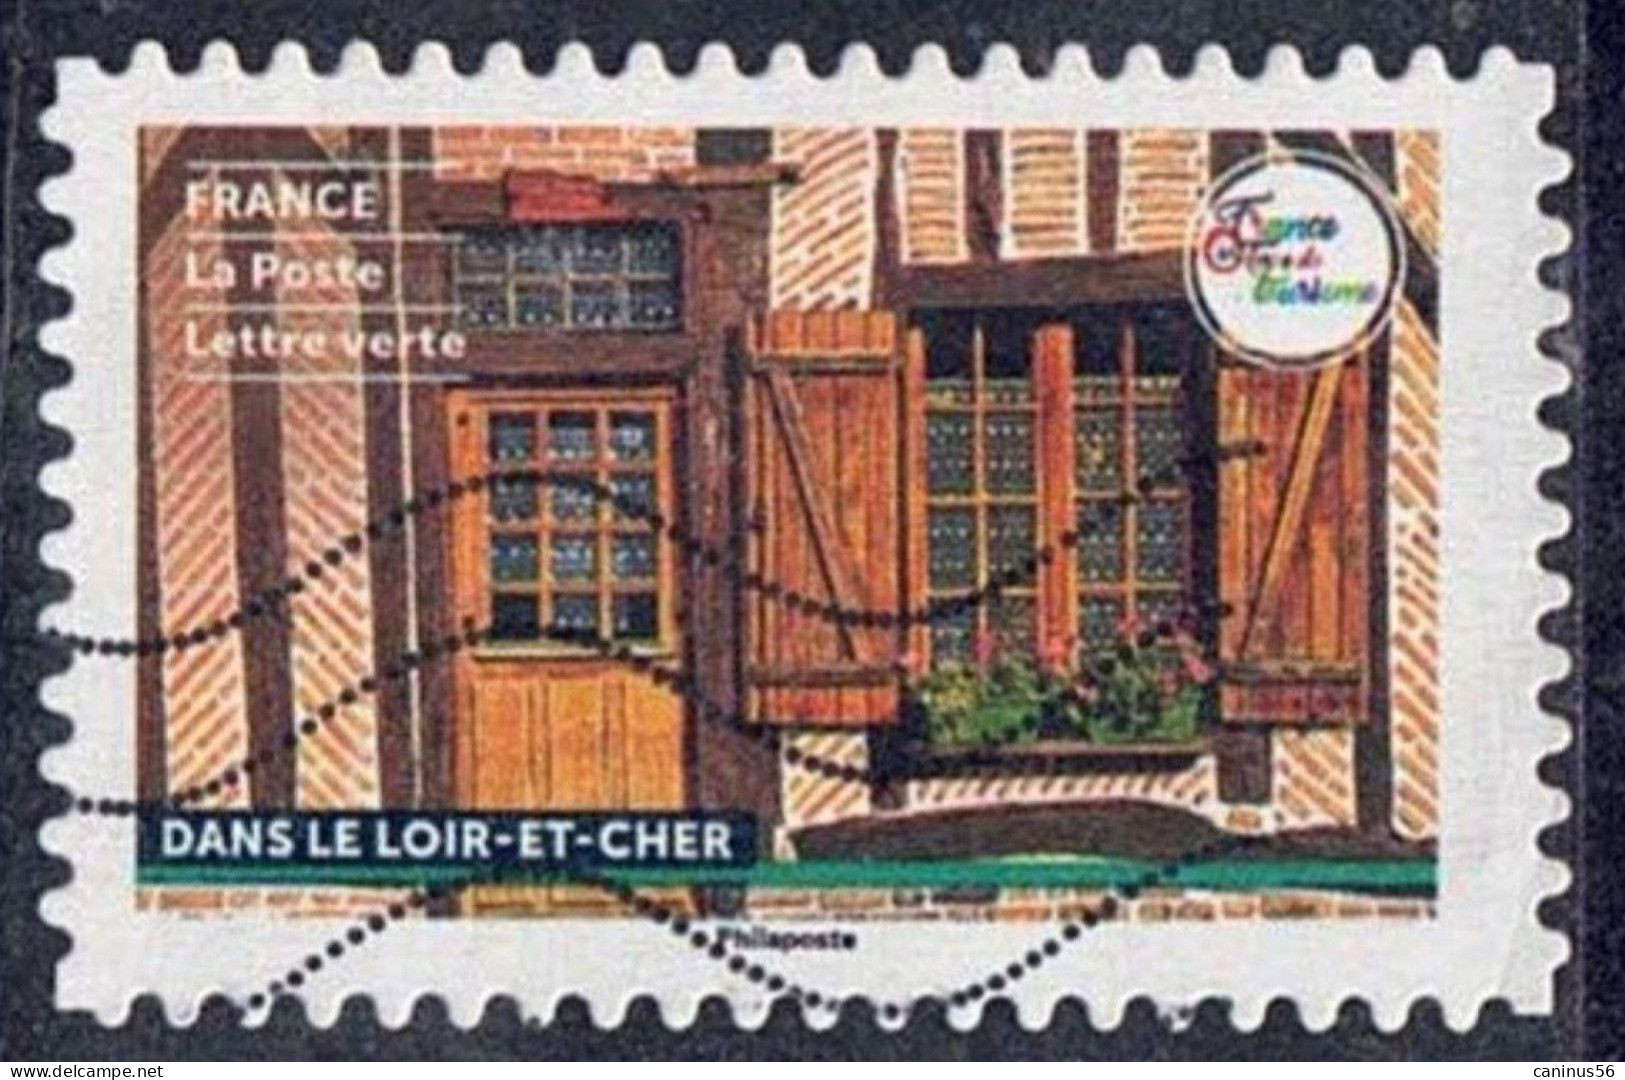 2022 Yt AA 2174 (o)  France Terre De Tourisme - Habitats Typiques Dans Le Loir-et-Cher - Oblitérés